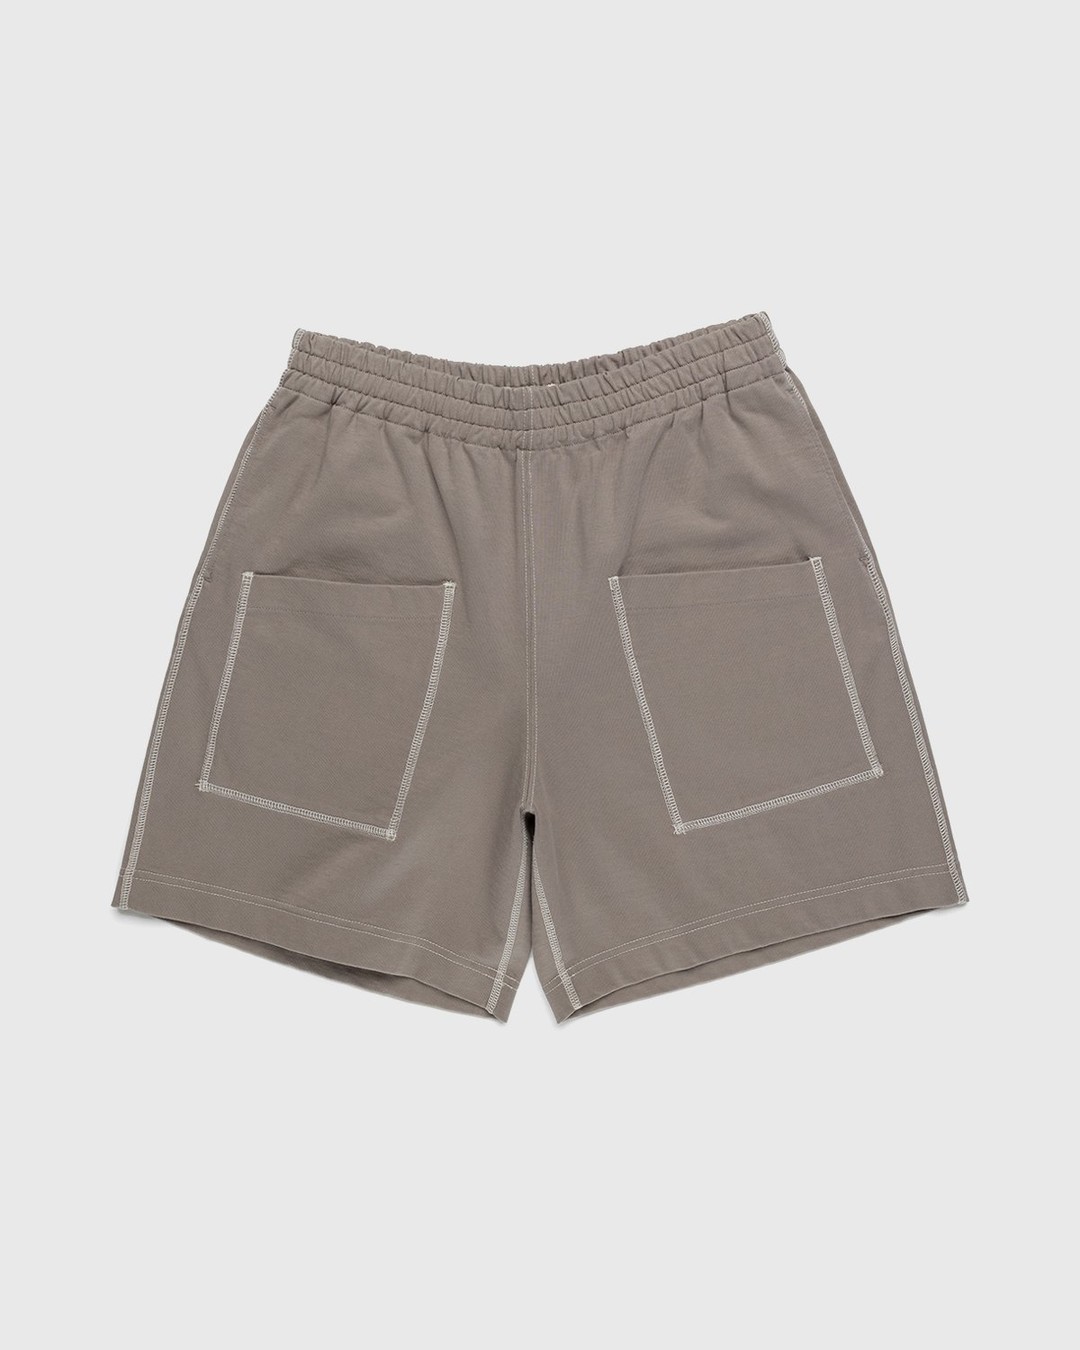 Auralee – High Density Cotton Jersey Shorts Grey Beige - Shorts - Beige - Image 1